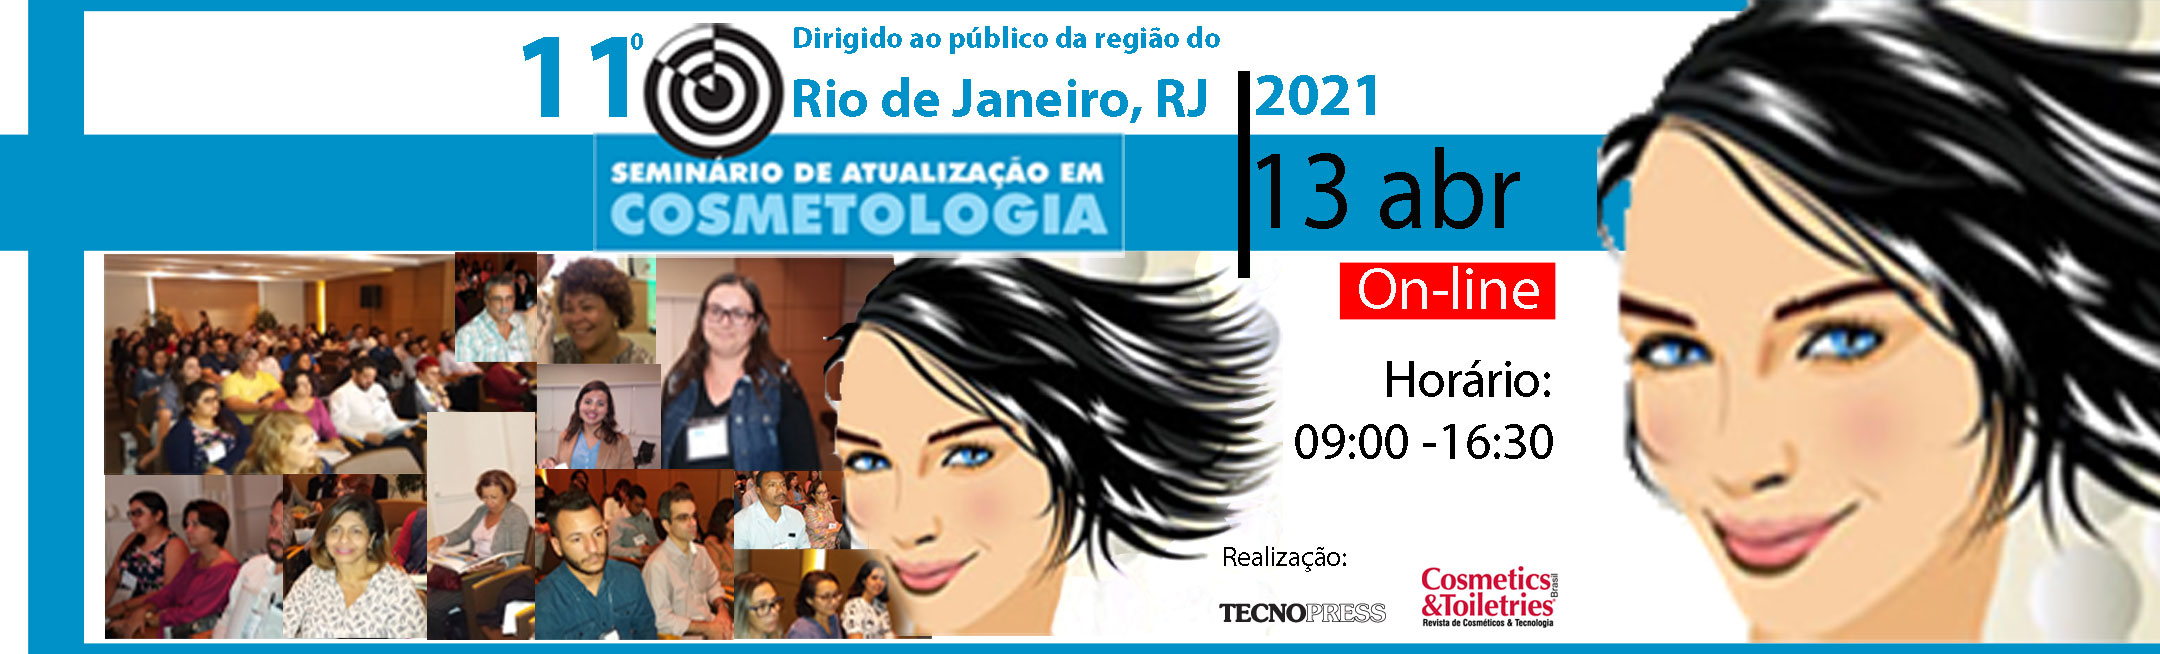 11º Seminário de Atualização em Cosmetologia do Rio de Janeiro 